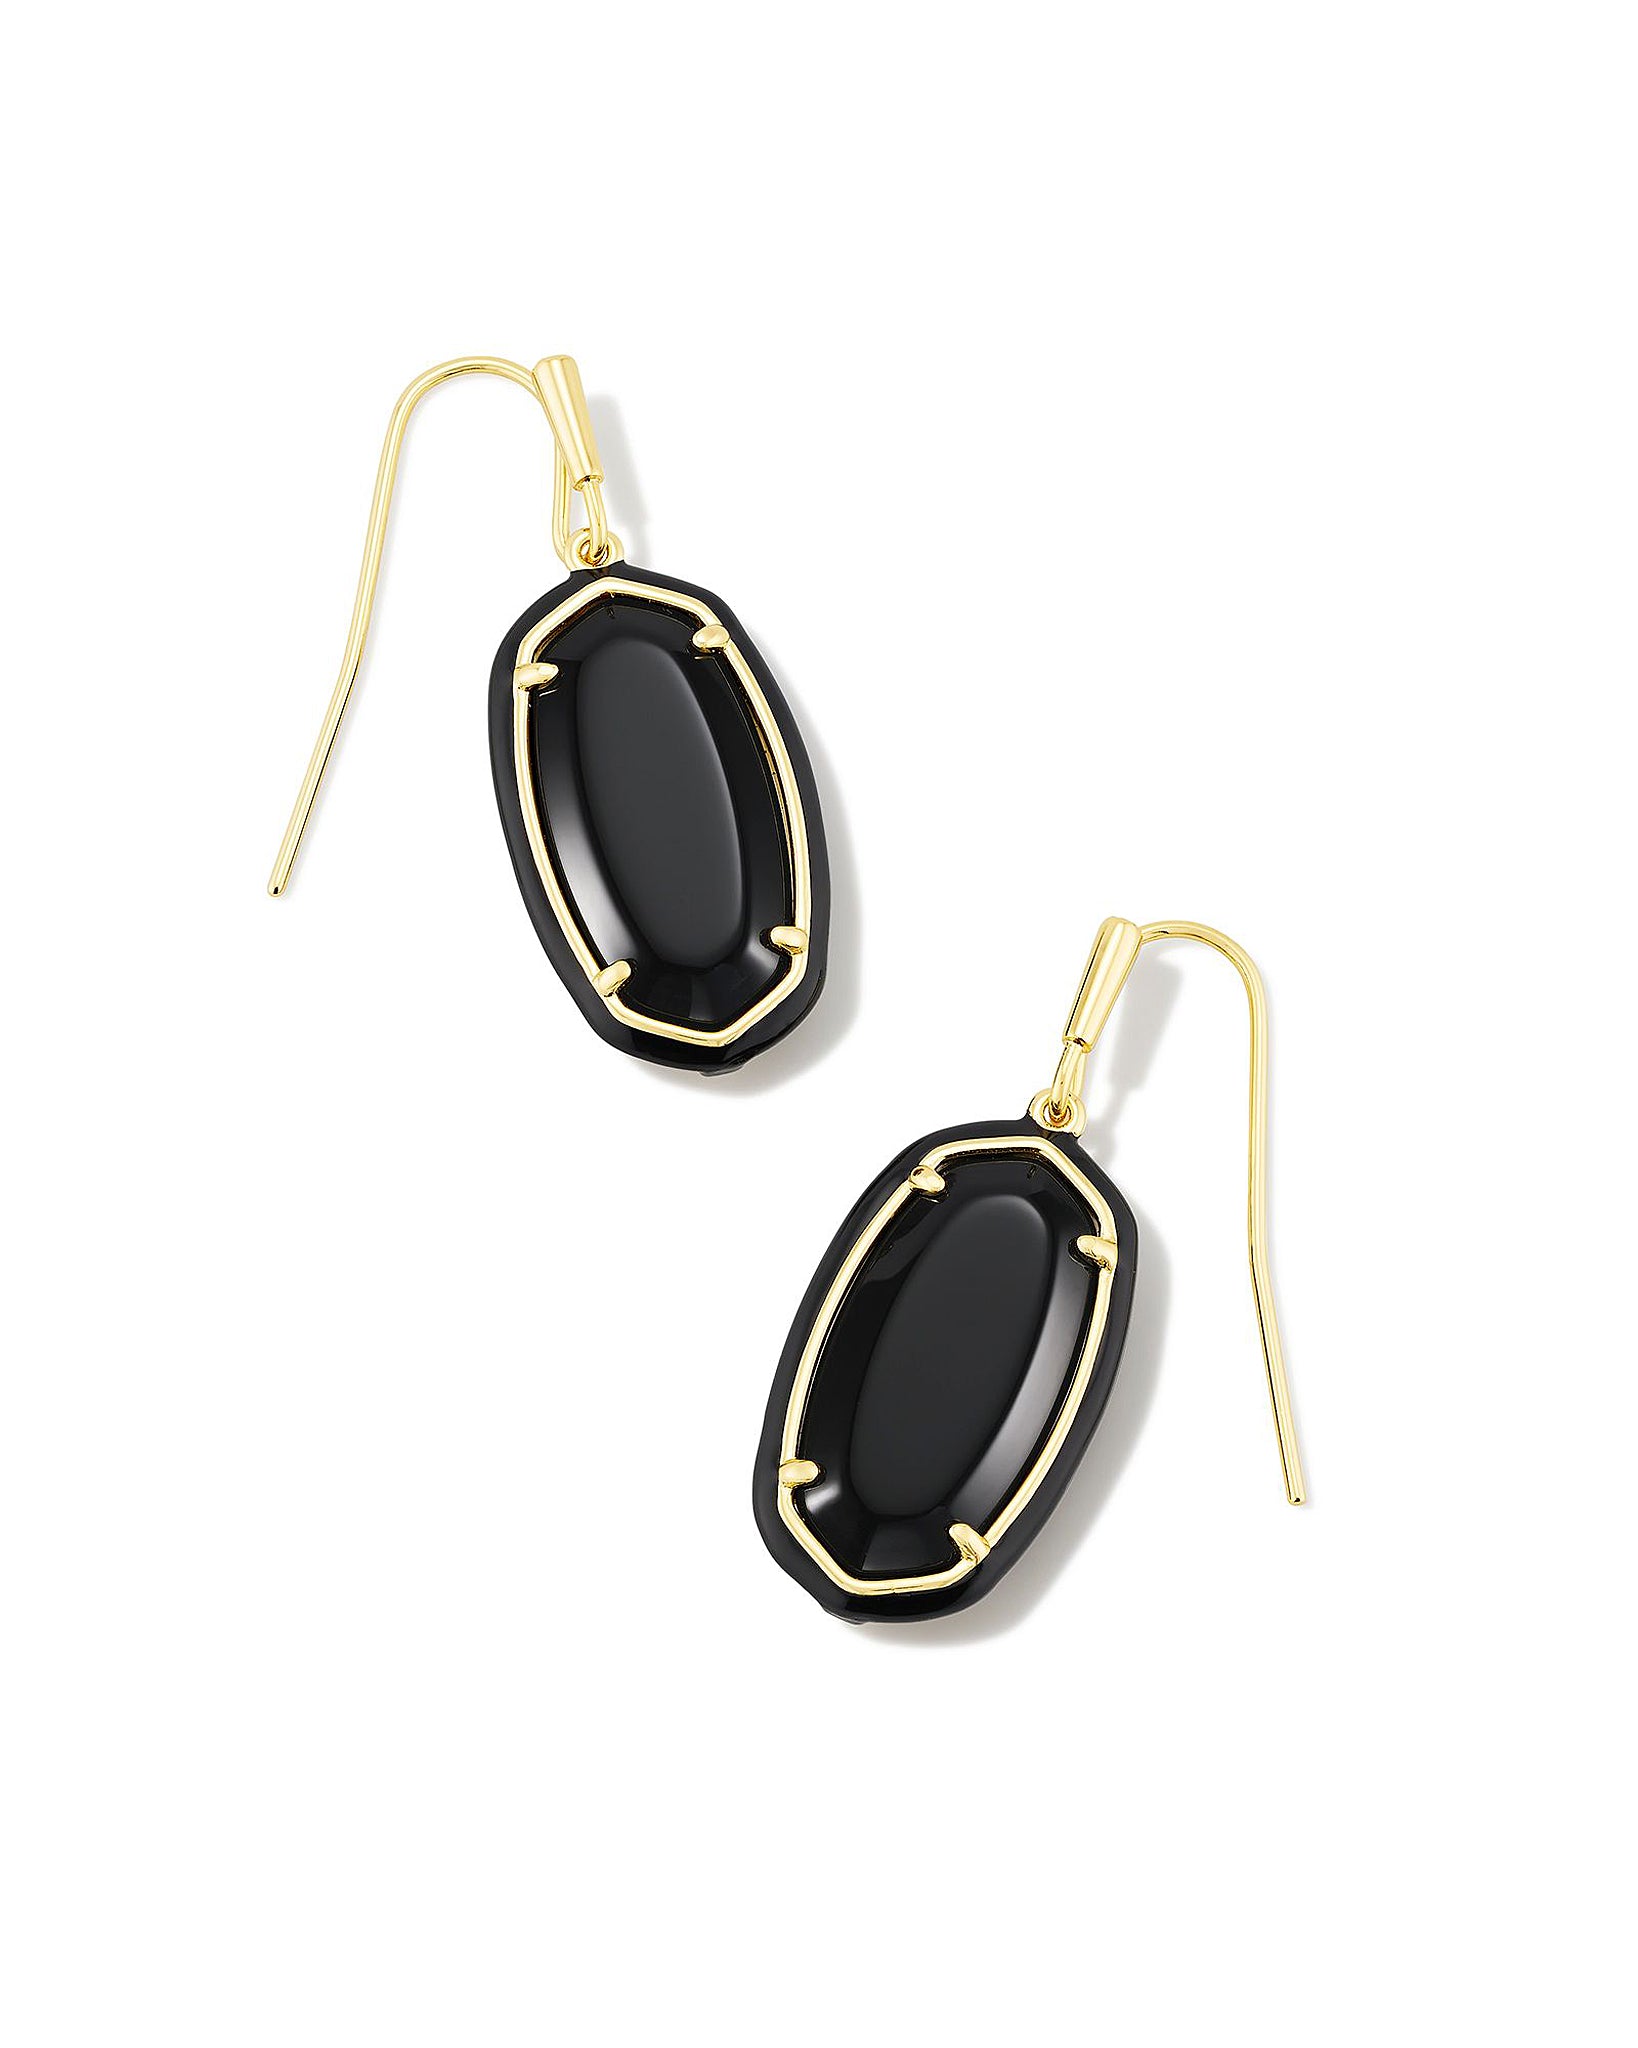 Kendra Scott Enamel Framed Dani Oval Dangle Earrings in Black Agate and Gold